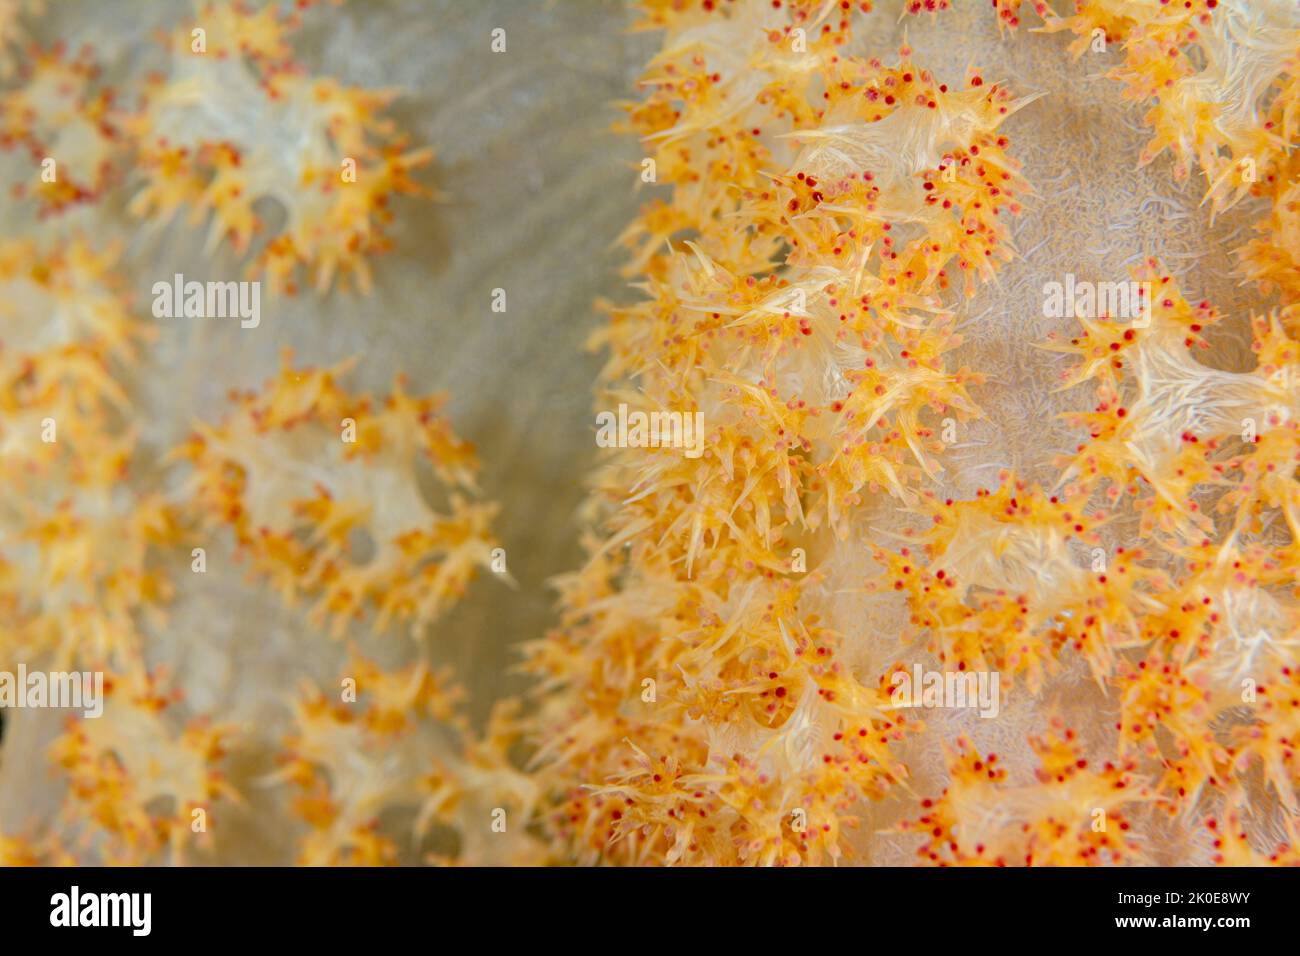 Il primo piano dei coralli tropicali morbidi mostra gli intricati e delicati animali che colonizzano i coralli per formare un bellissimo elemento vitale nel paci sud Foto Stock